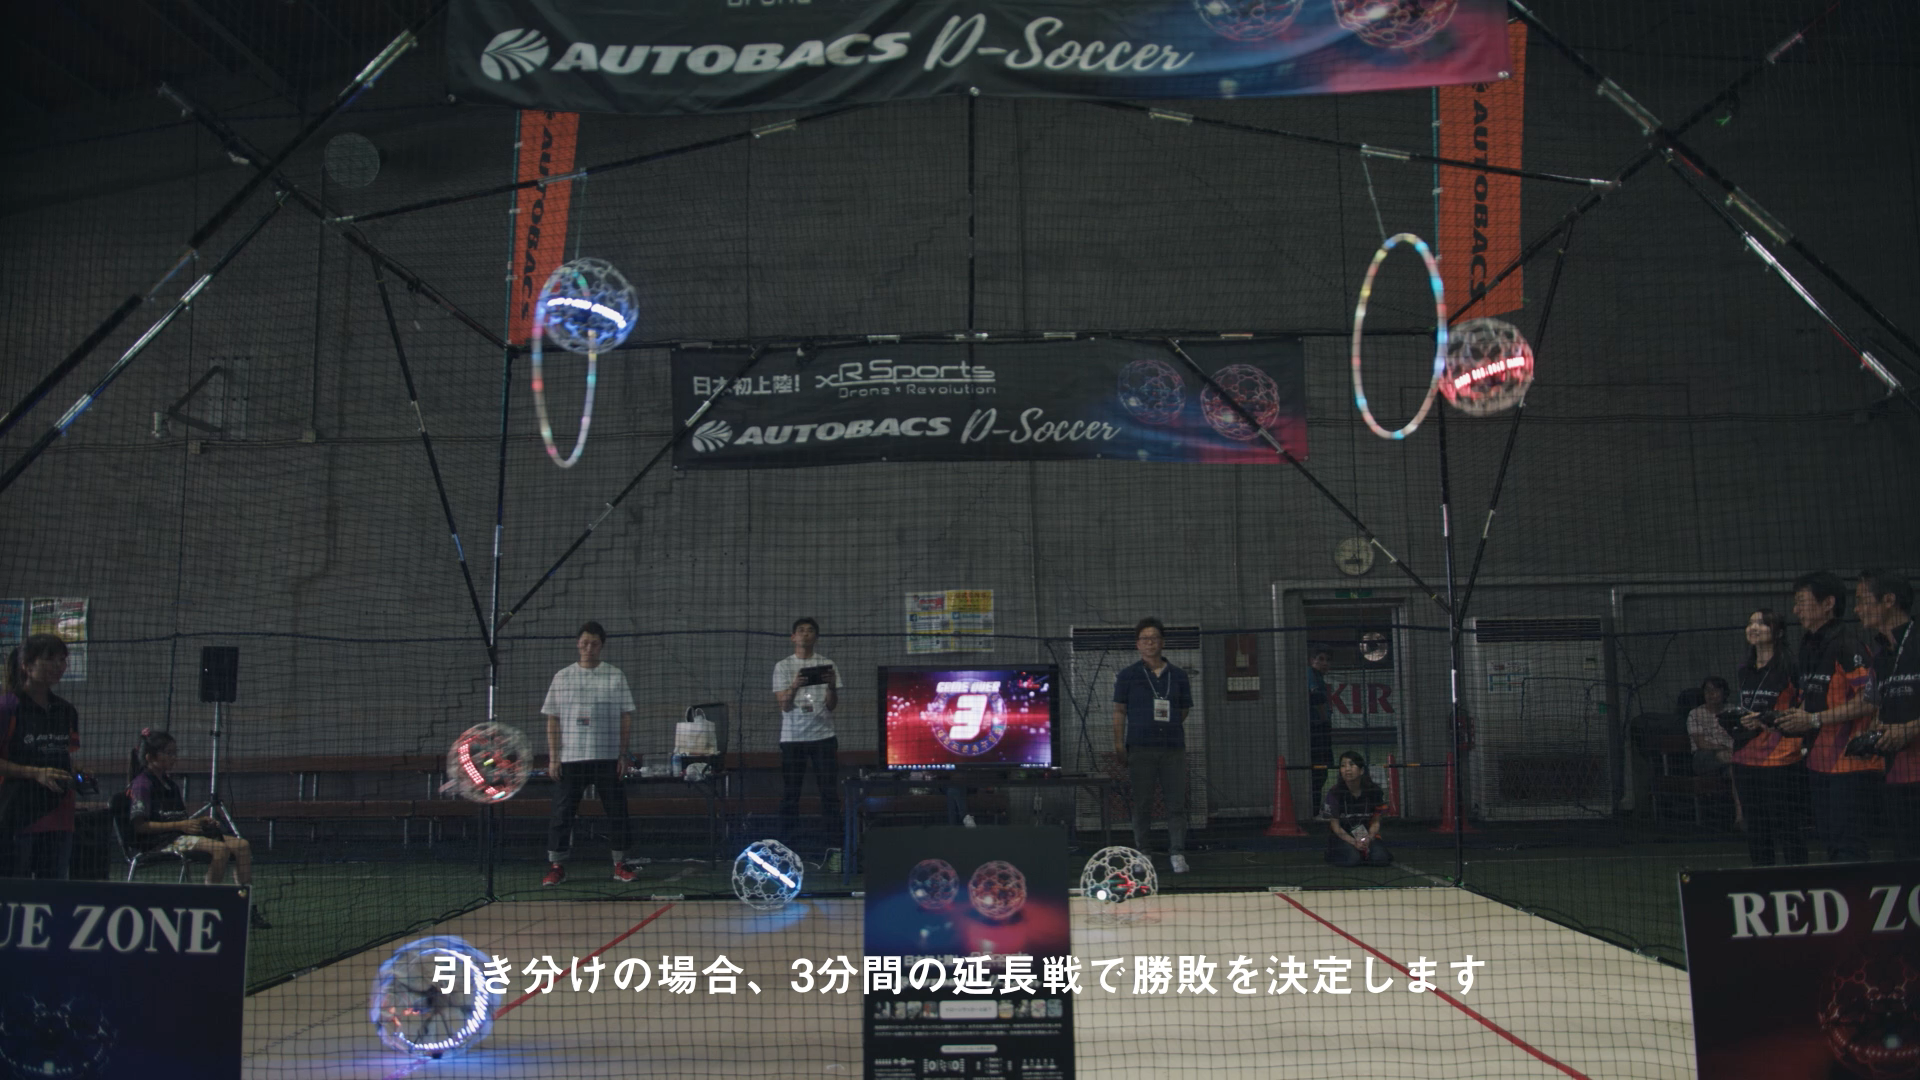 オートバックス ドローンサッカー Autobacs Drone Soccer Promotion Video Doar